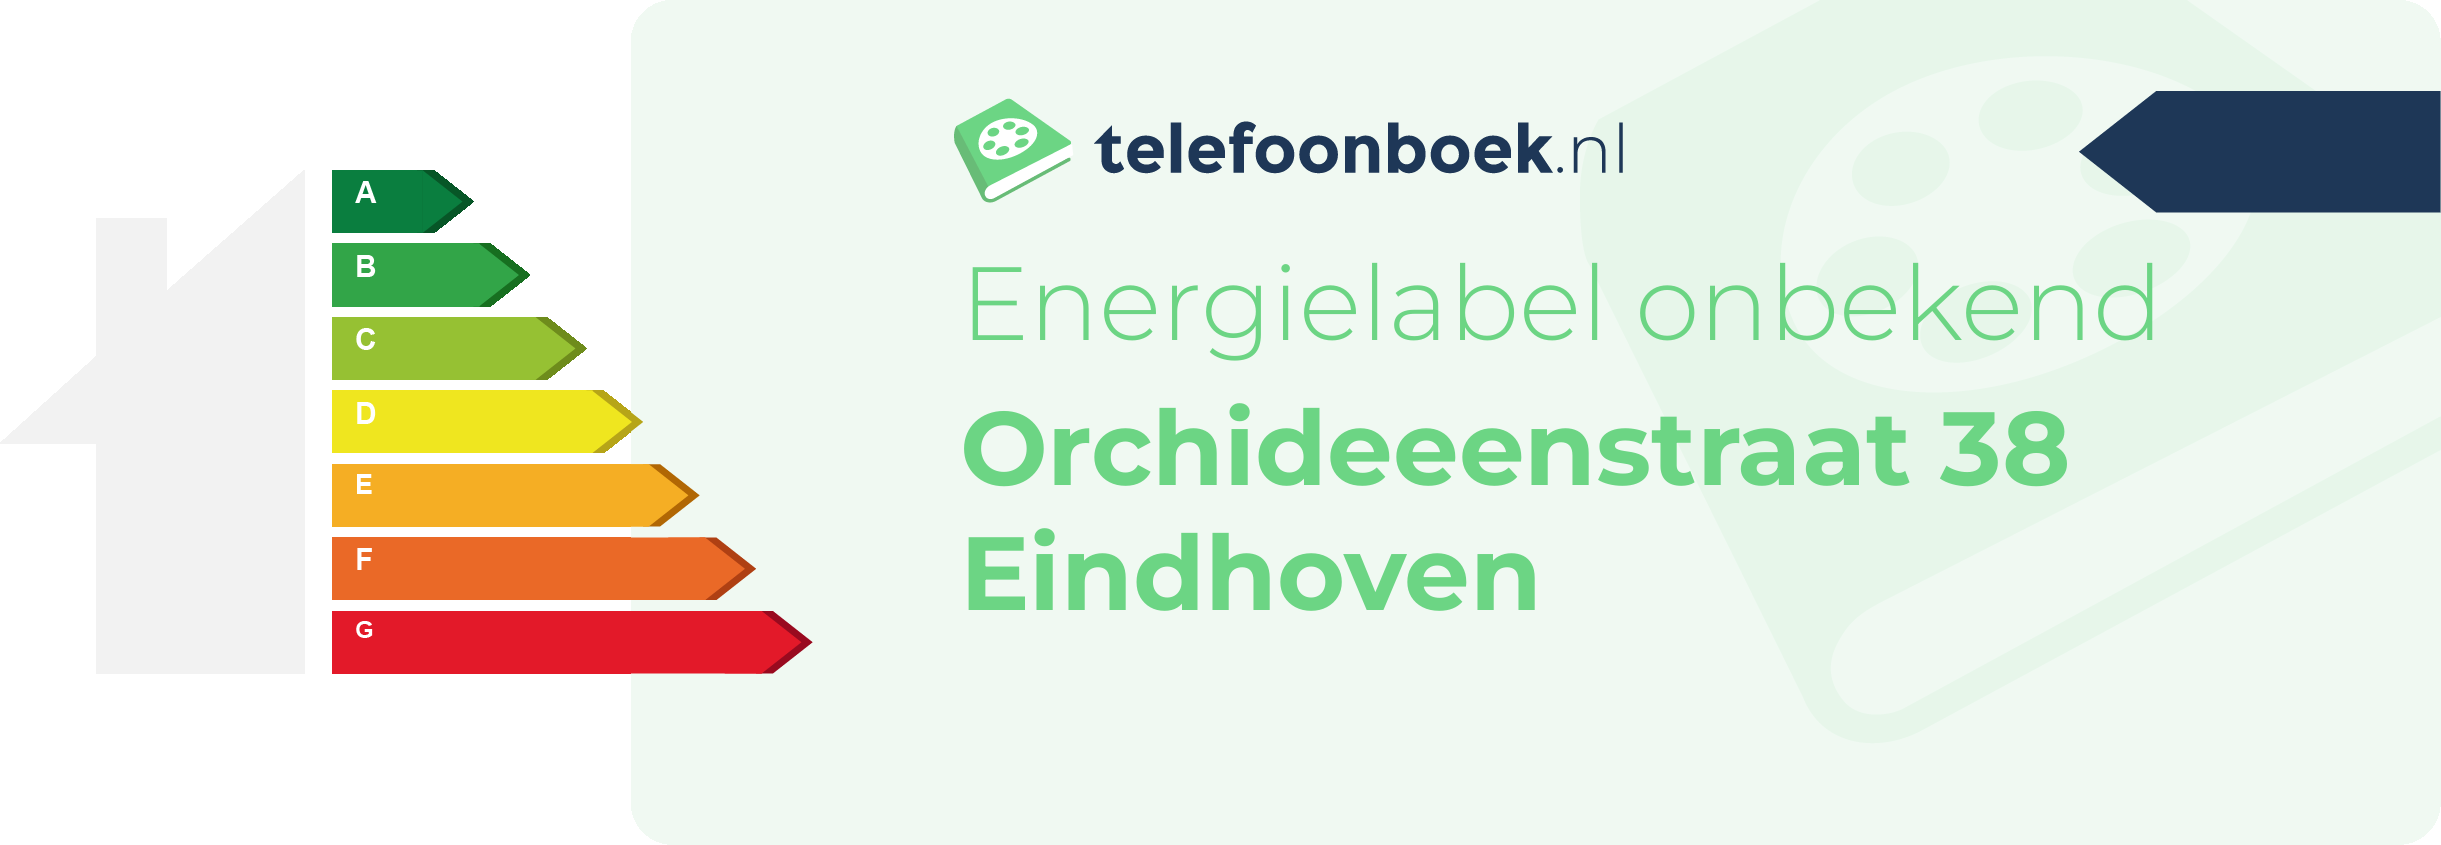 Energielabel Orchideeenstraat 38 Eindhoven